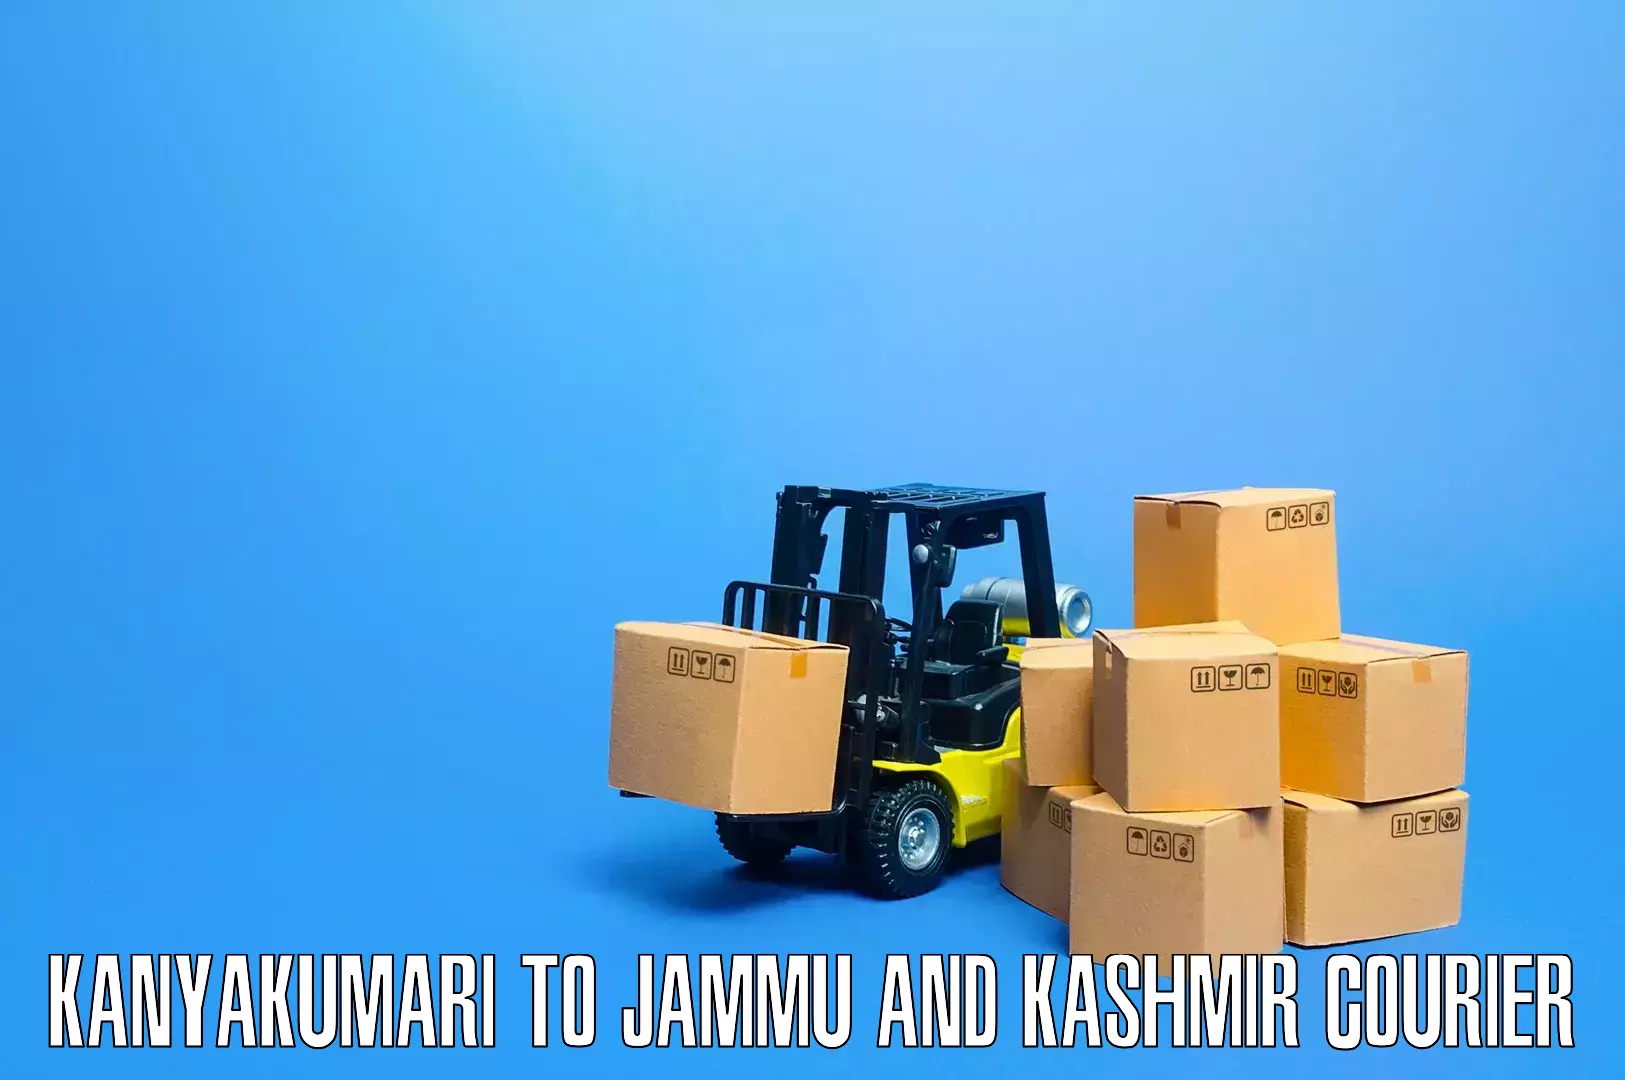 Professional moving assistance Kanyakumari to Jammu and Kashmir